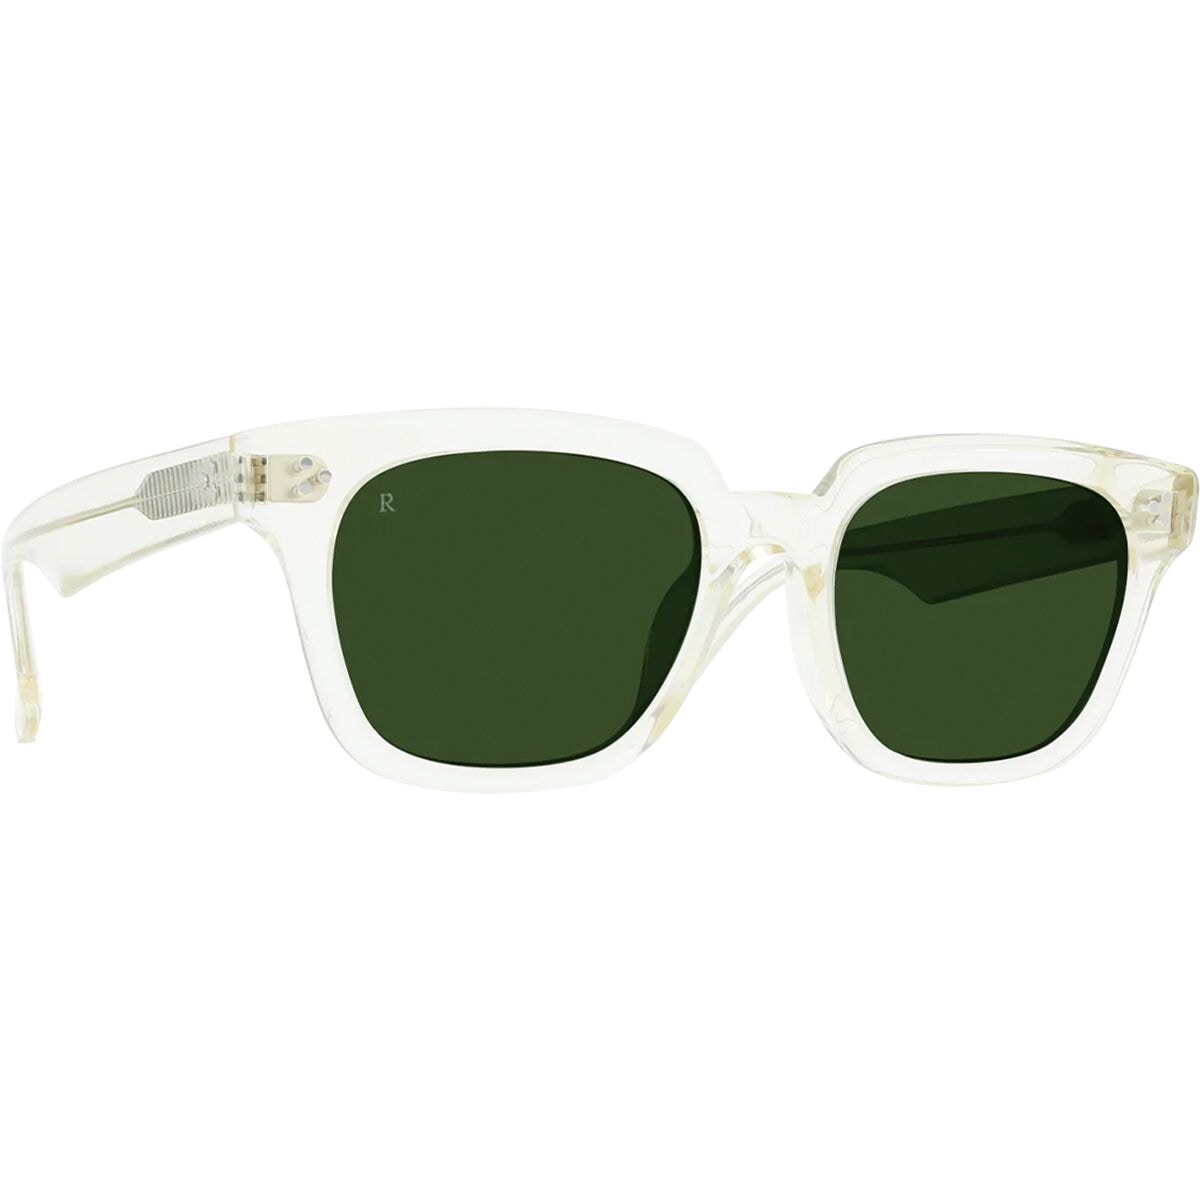 Поляризованные солнцезащитные очки Phonos 53 RAEN Optics